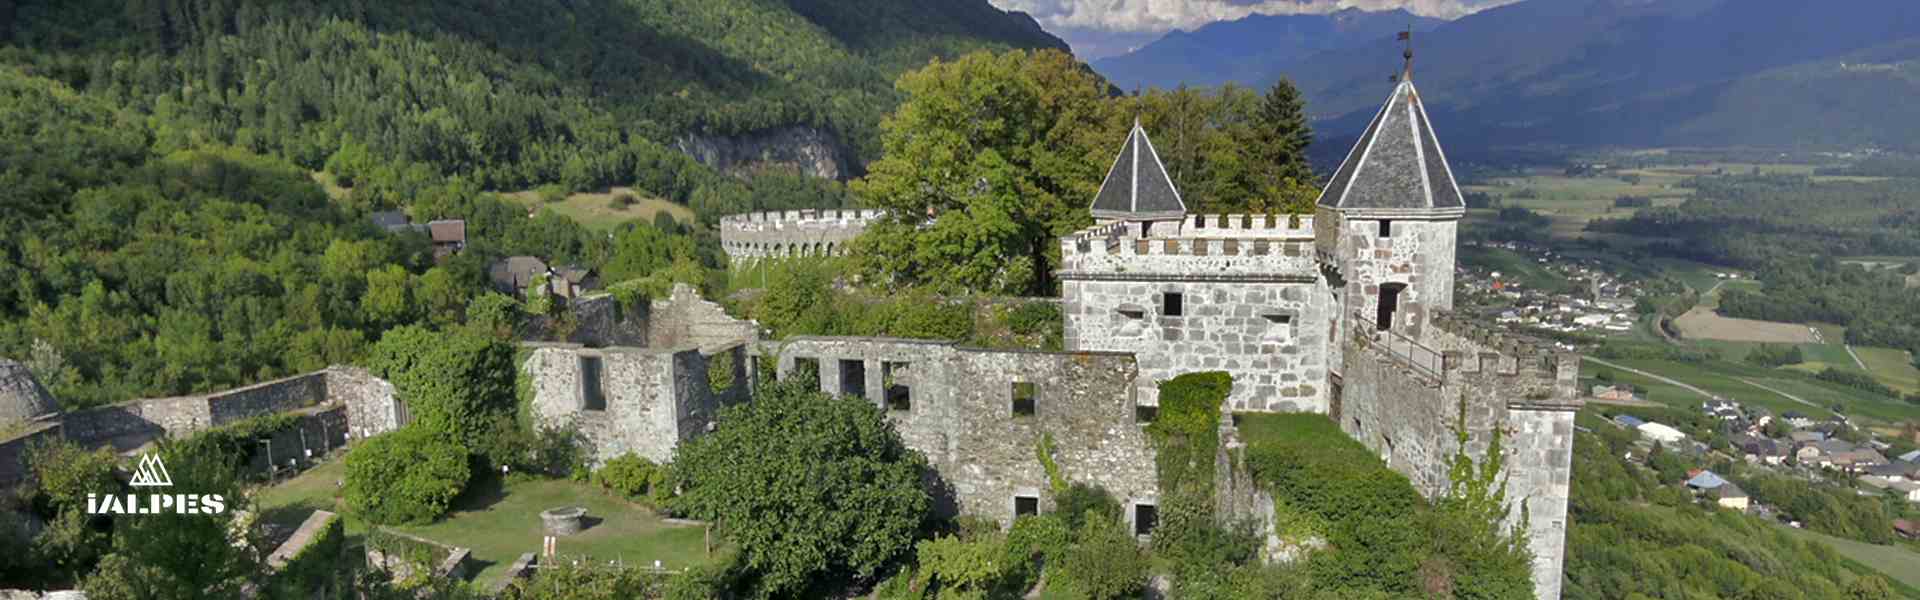 Château de Miolans en Savoie, Rhône-Alpes